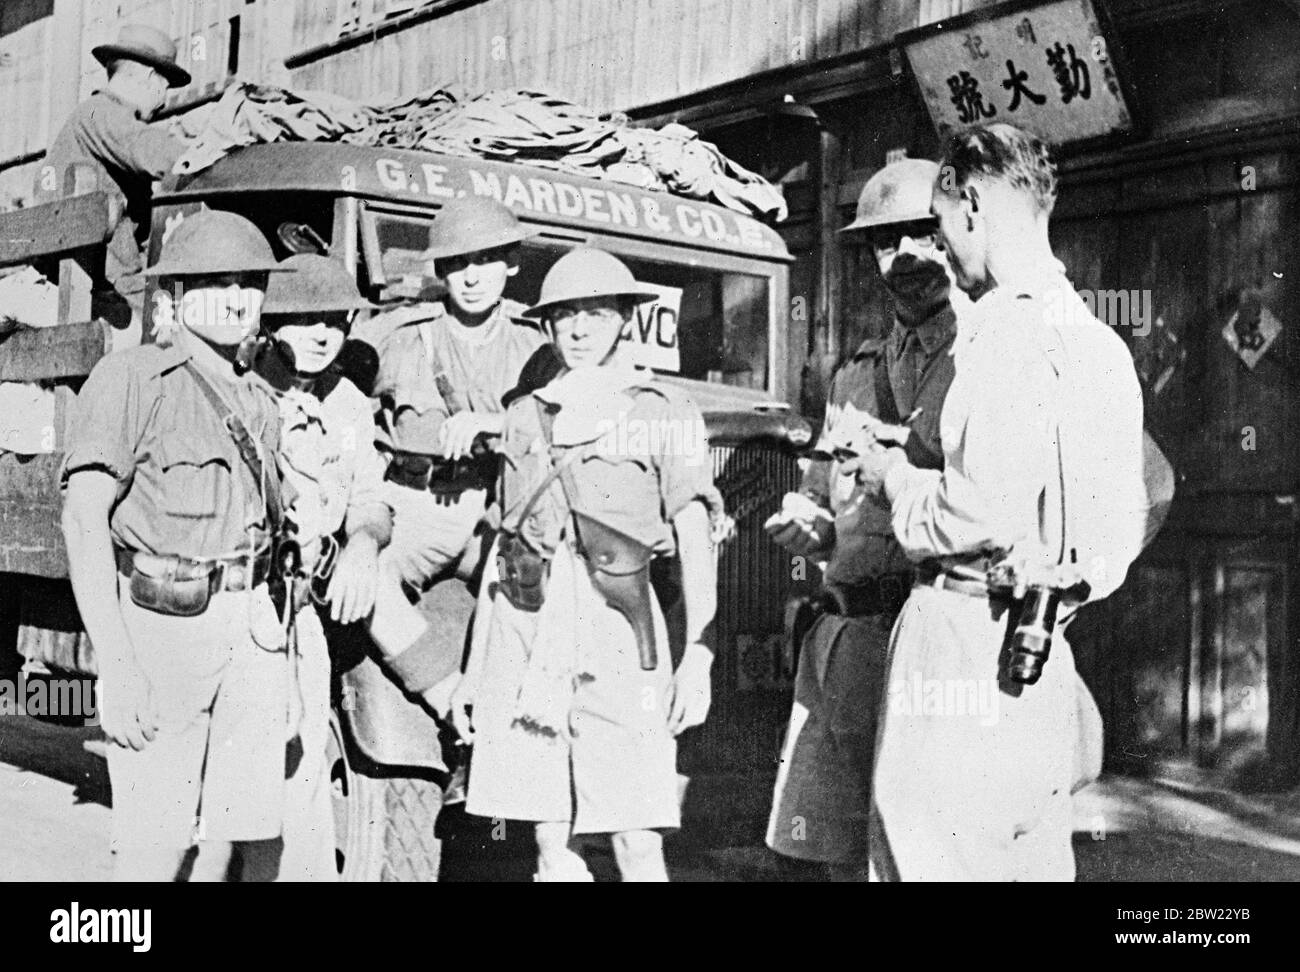 Les membres américains du corps de volontaires de Shanghai évacuaient des civils chinois de la zone de bataille du district de Yangtsepoo [district de Yangpu]. Un bébé est né dans son camion comme il était en route vers le règlement international. Un photographe américain R. R. Brandt se trouve à droite. 21 septembre 1937 Banque D'Images